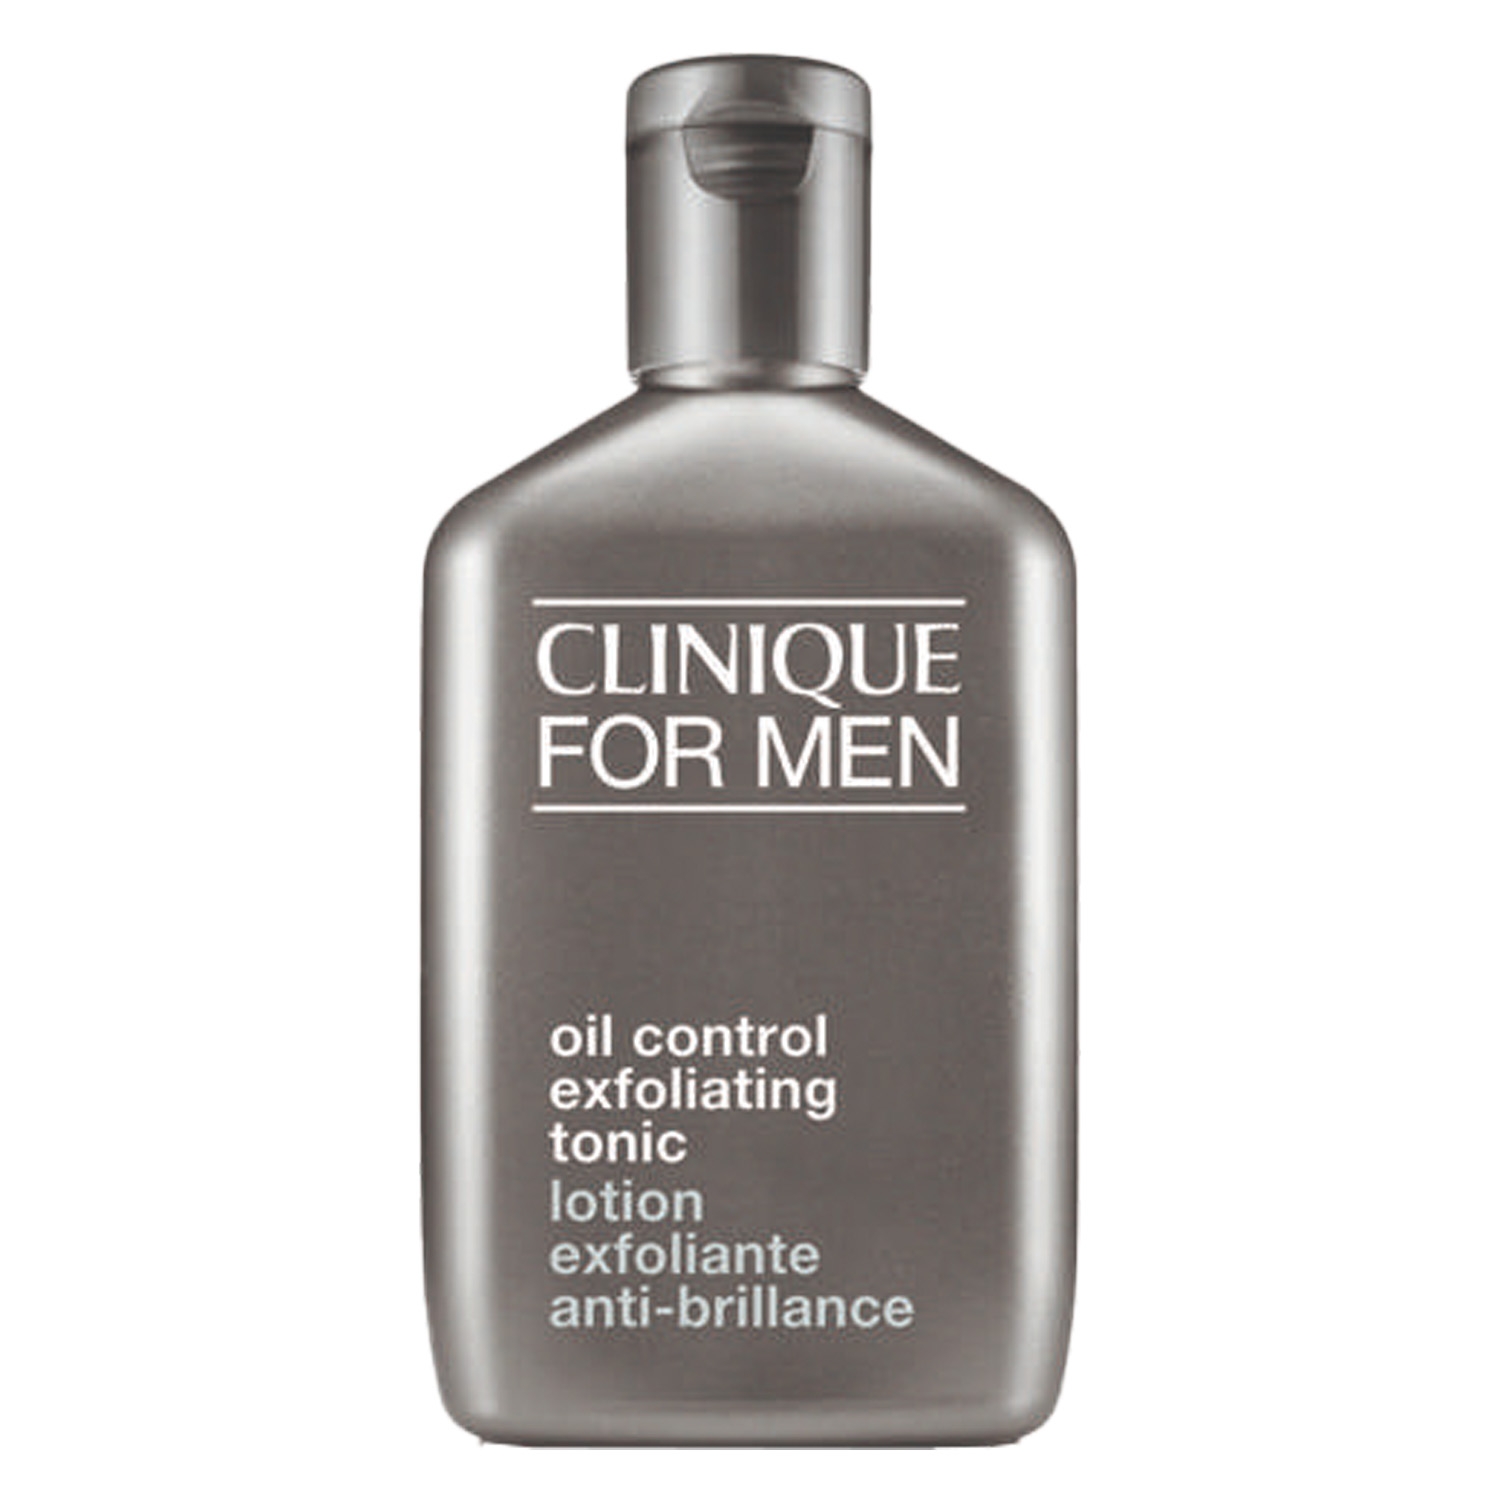 Produktbild von Skin Supplies For Men - Scruffing Lotion 3.5